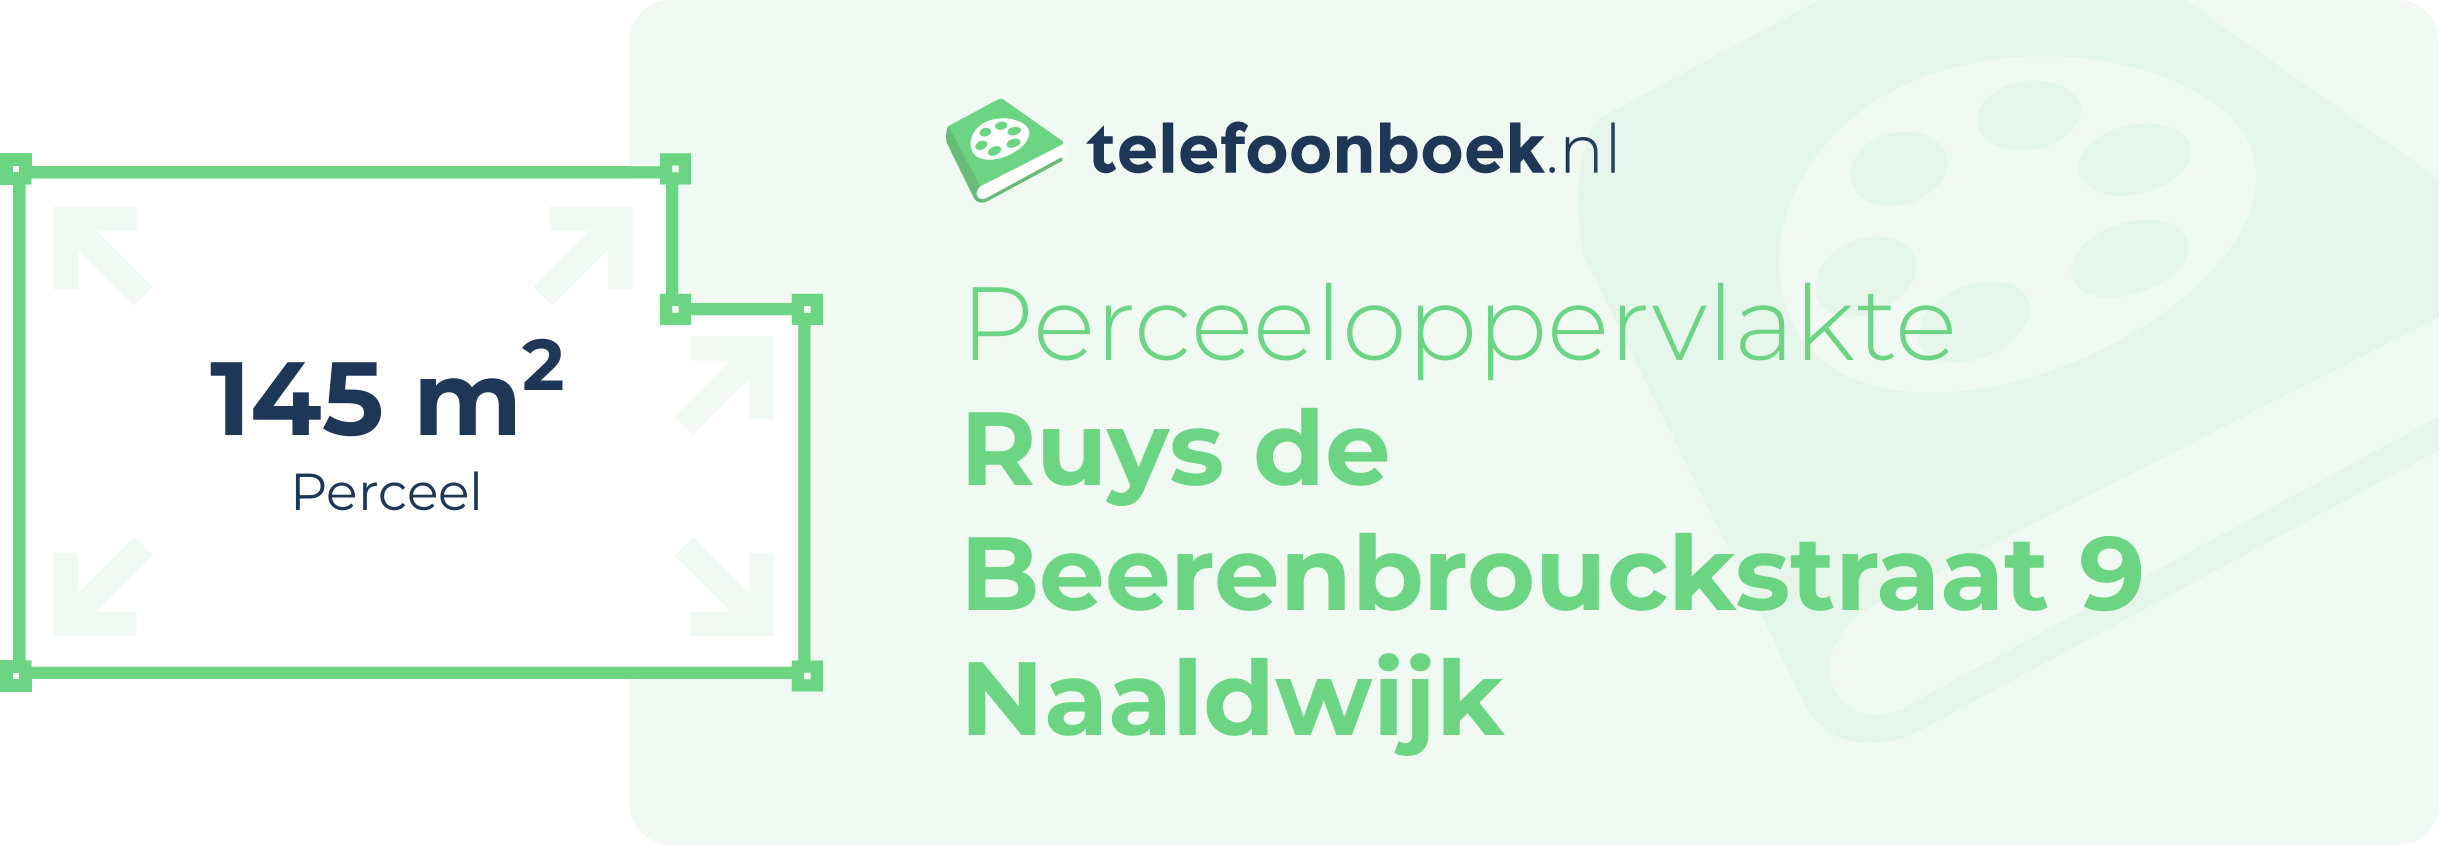 Perceeloppervlakte Ruys De Beerenbrouckstraat 9 Naaldwijk